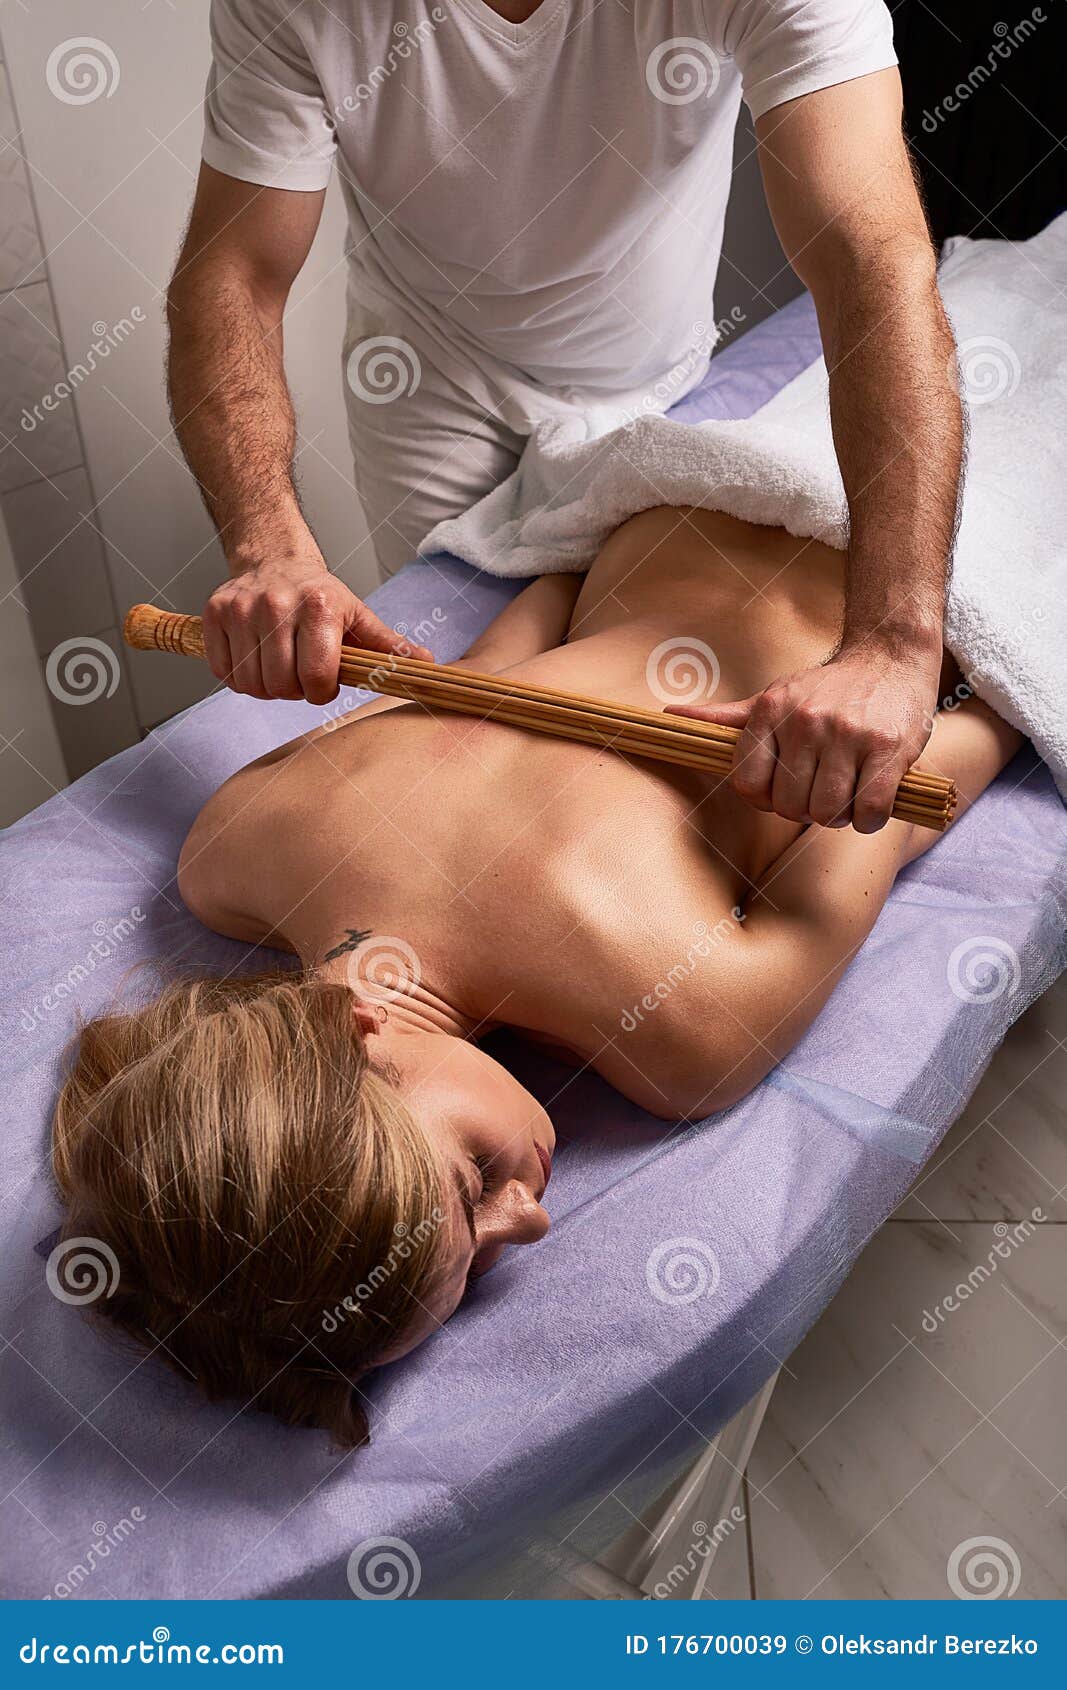 Female naked massage Erotic Nude